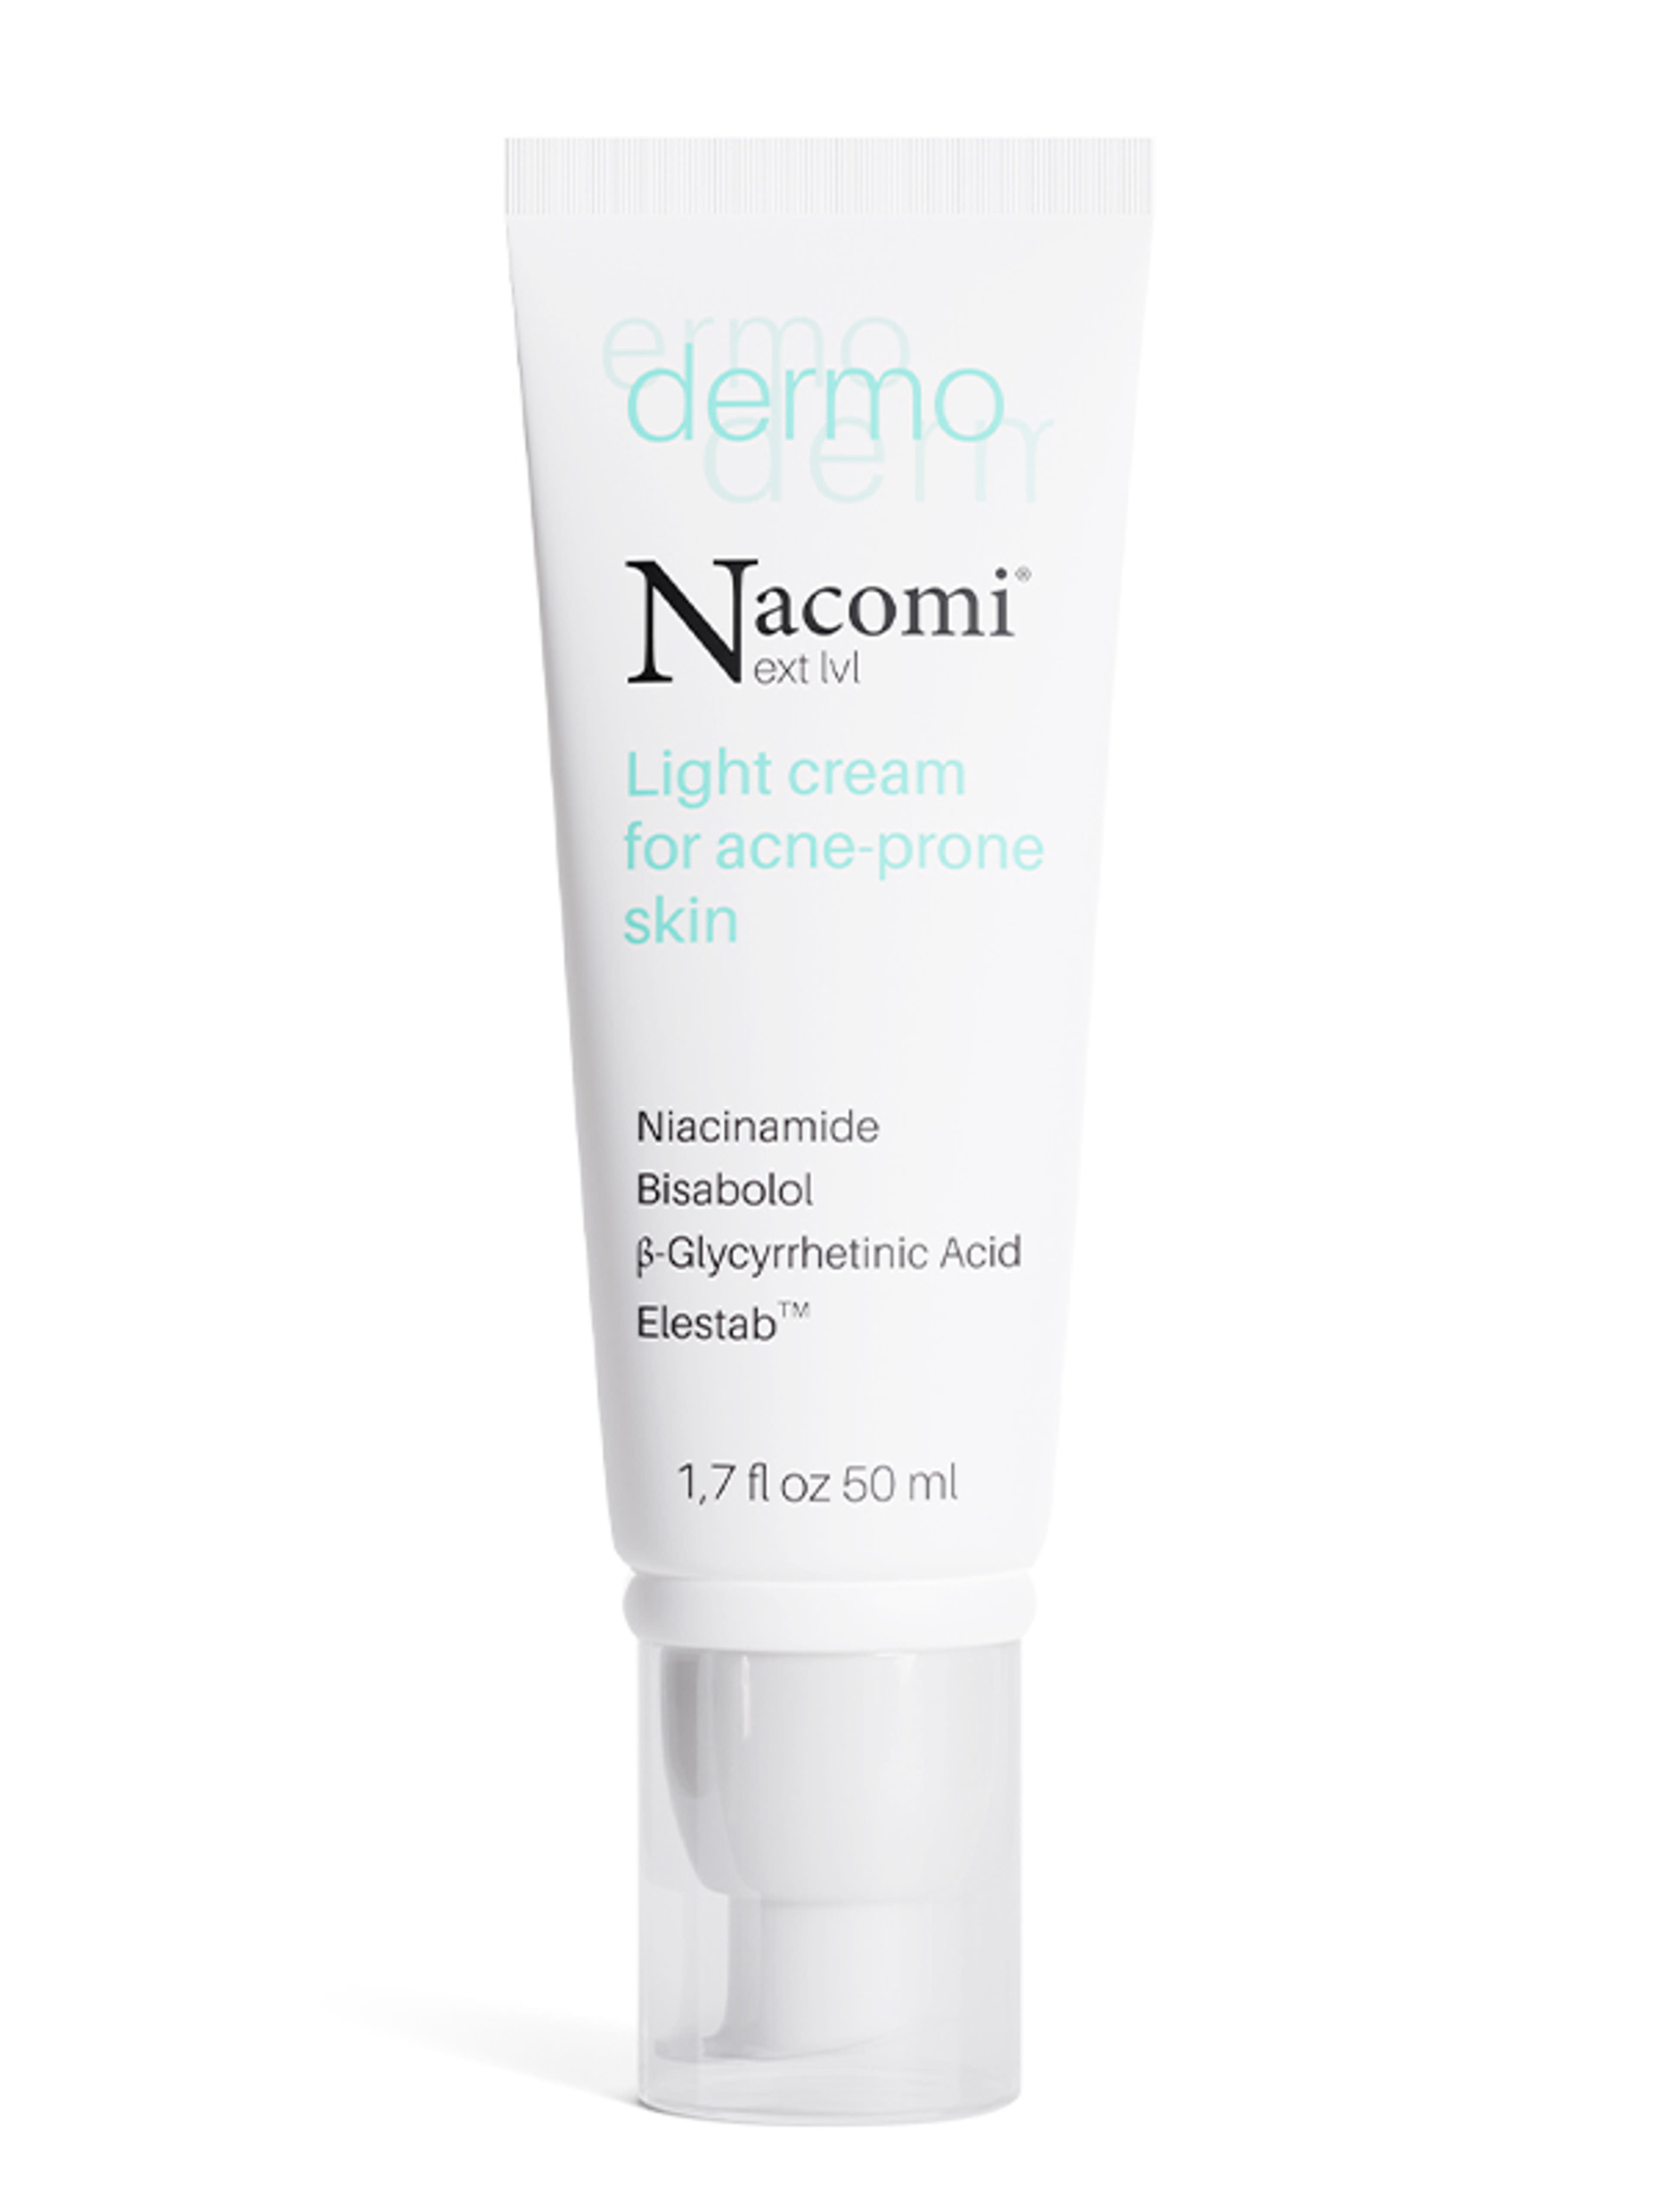 Nacomi Dermo hidratáló krém aknés bőrre - 50 ml